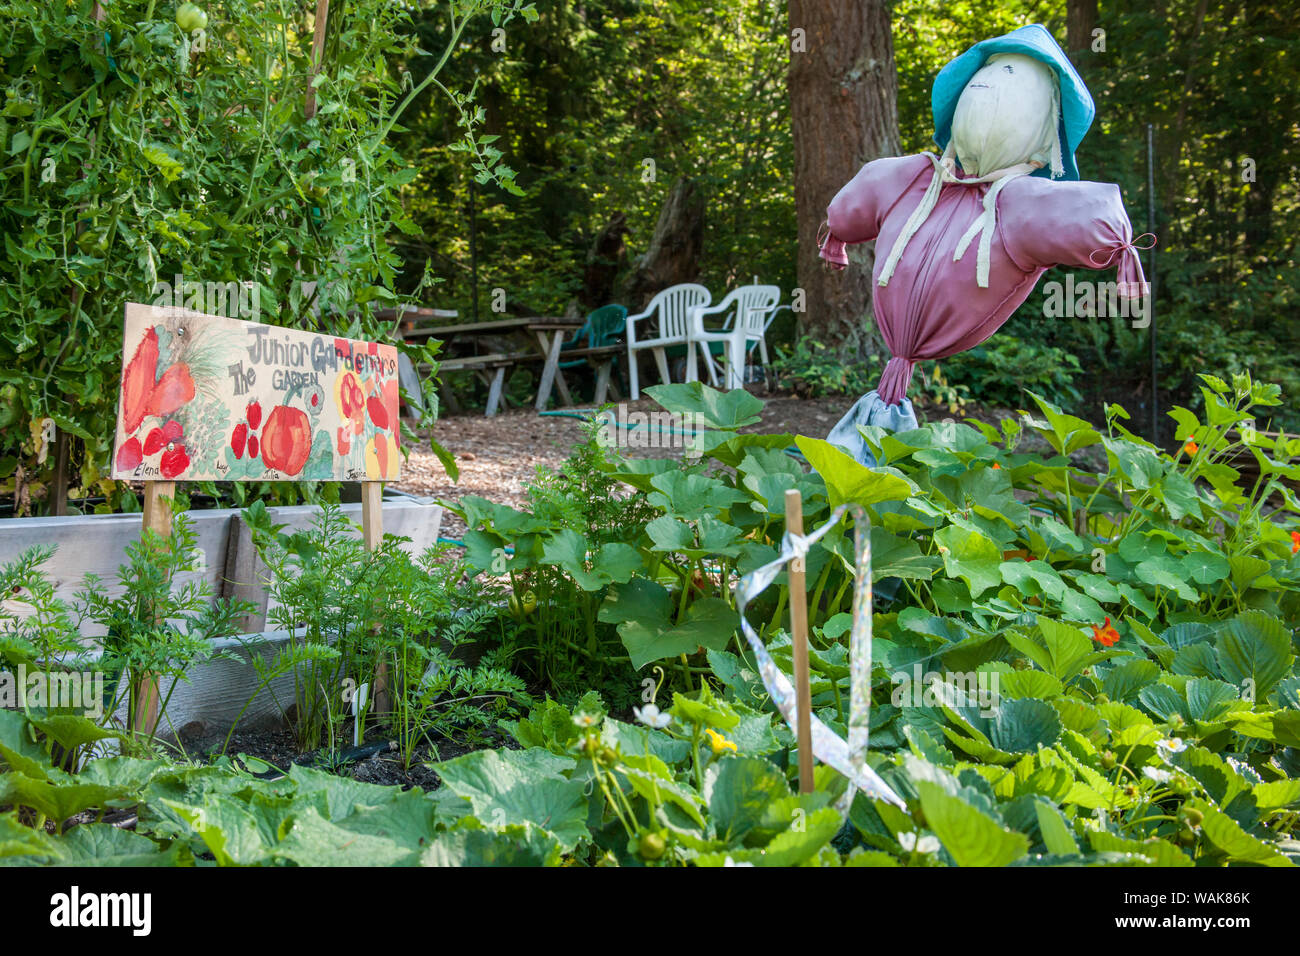 Issaquah, Washington State, USA. Junior Gärtner angehobener ein Garten in einem gemeinschaftlichen Garten, komplett mit einem Mädchen vogelscheuche sie gemacht. Wachsende sind Karotten, nasturtiums, Squash und Erdbeeren. Stockfoto